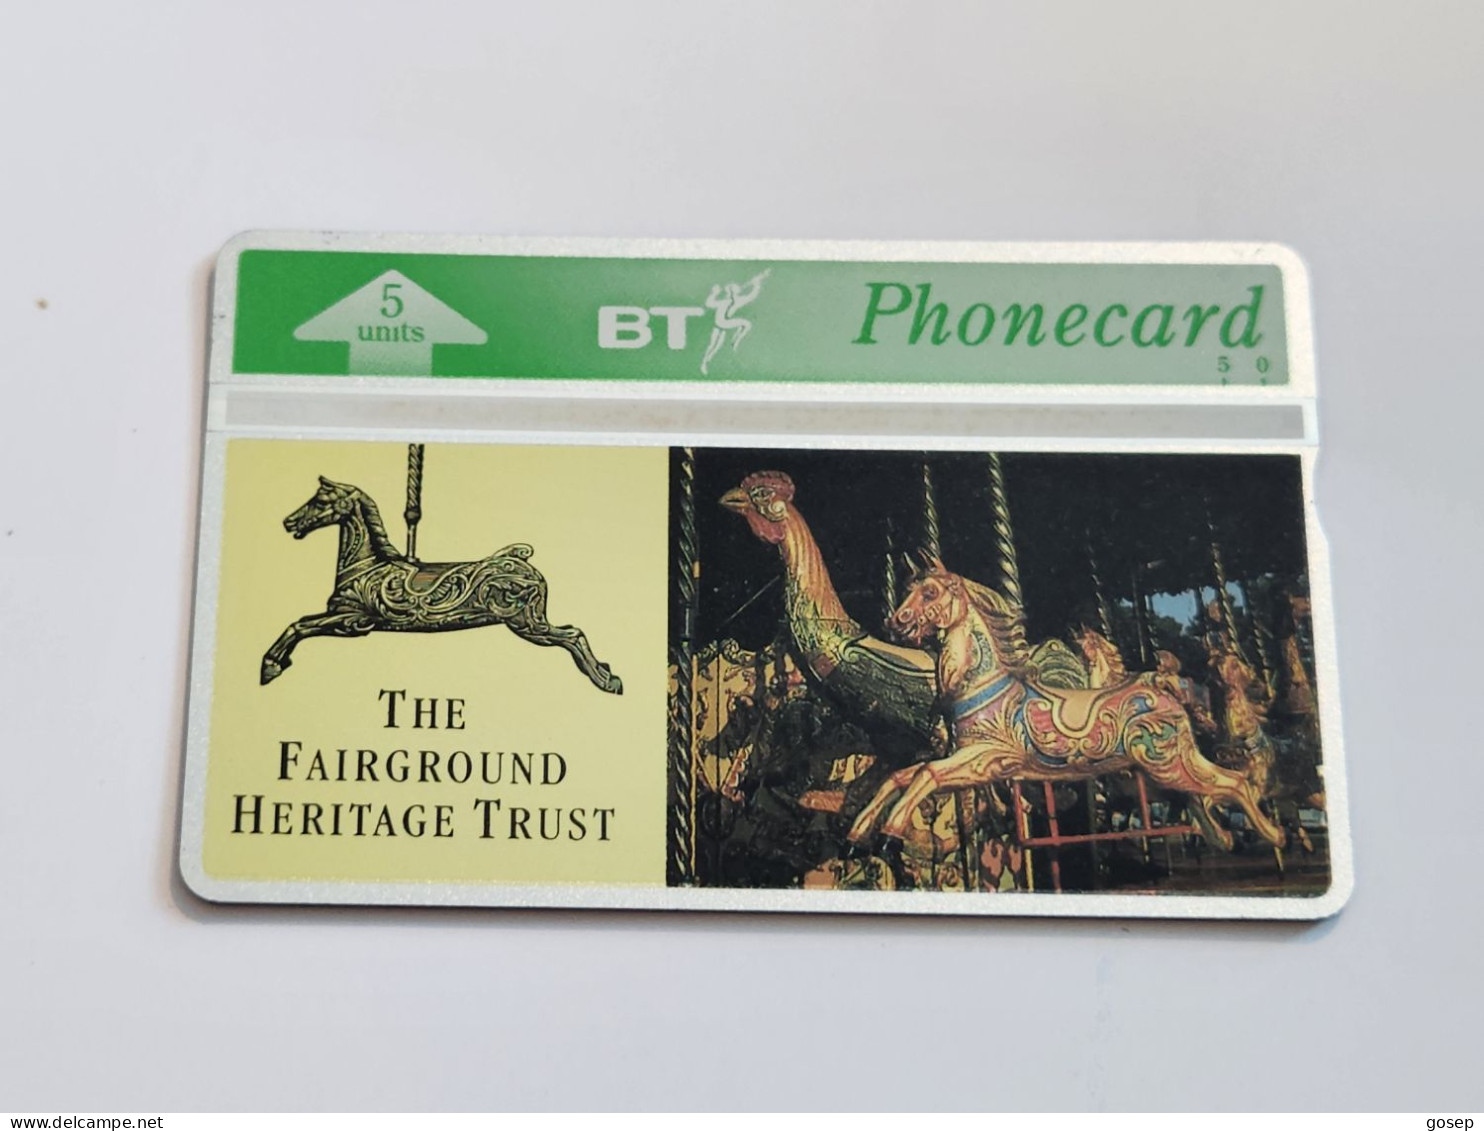 United Kingdom-(BTG-074)-Fairground Heritage Trust-(96)(5units)(246A96064)(tirage-500)(price Cataloge-20.00£-mint) - BT Allgemeine